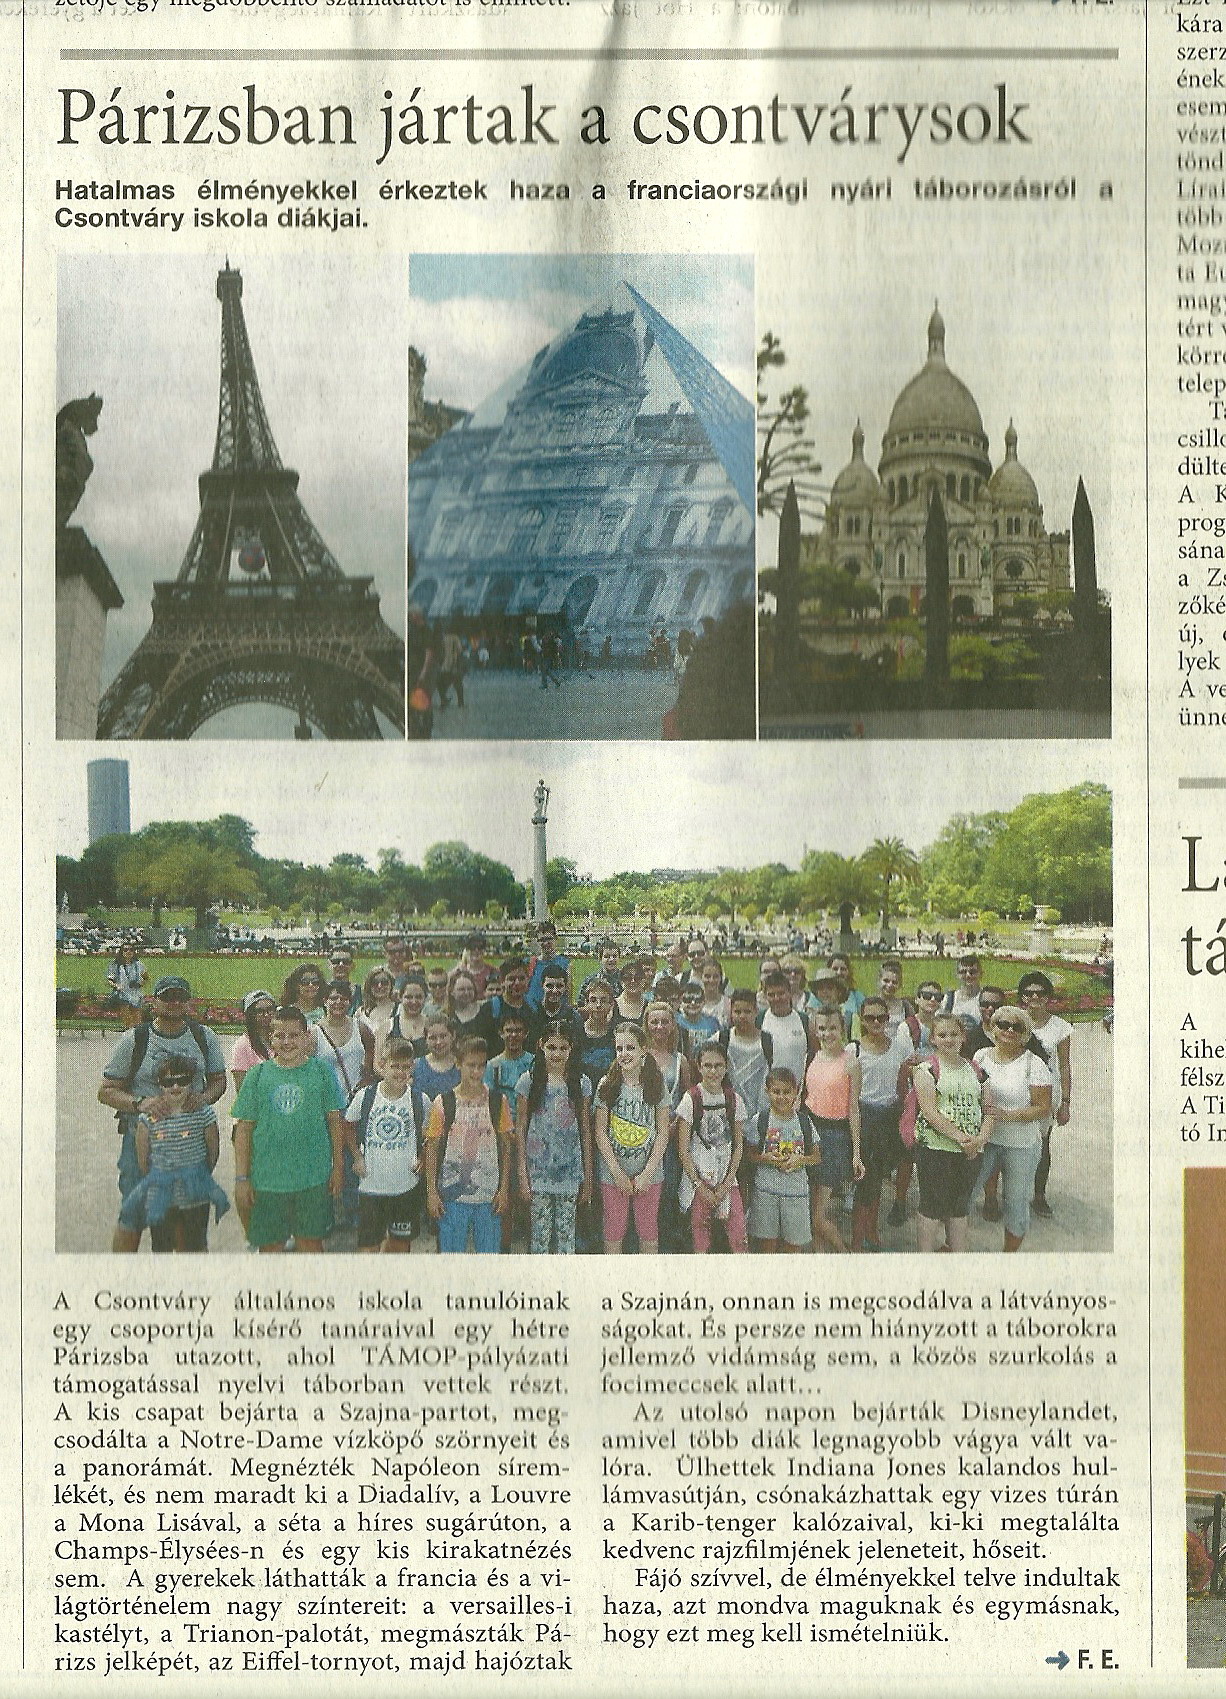 Párizsban jártak diákjaink